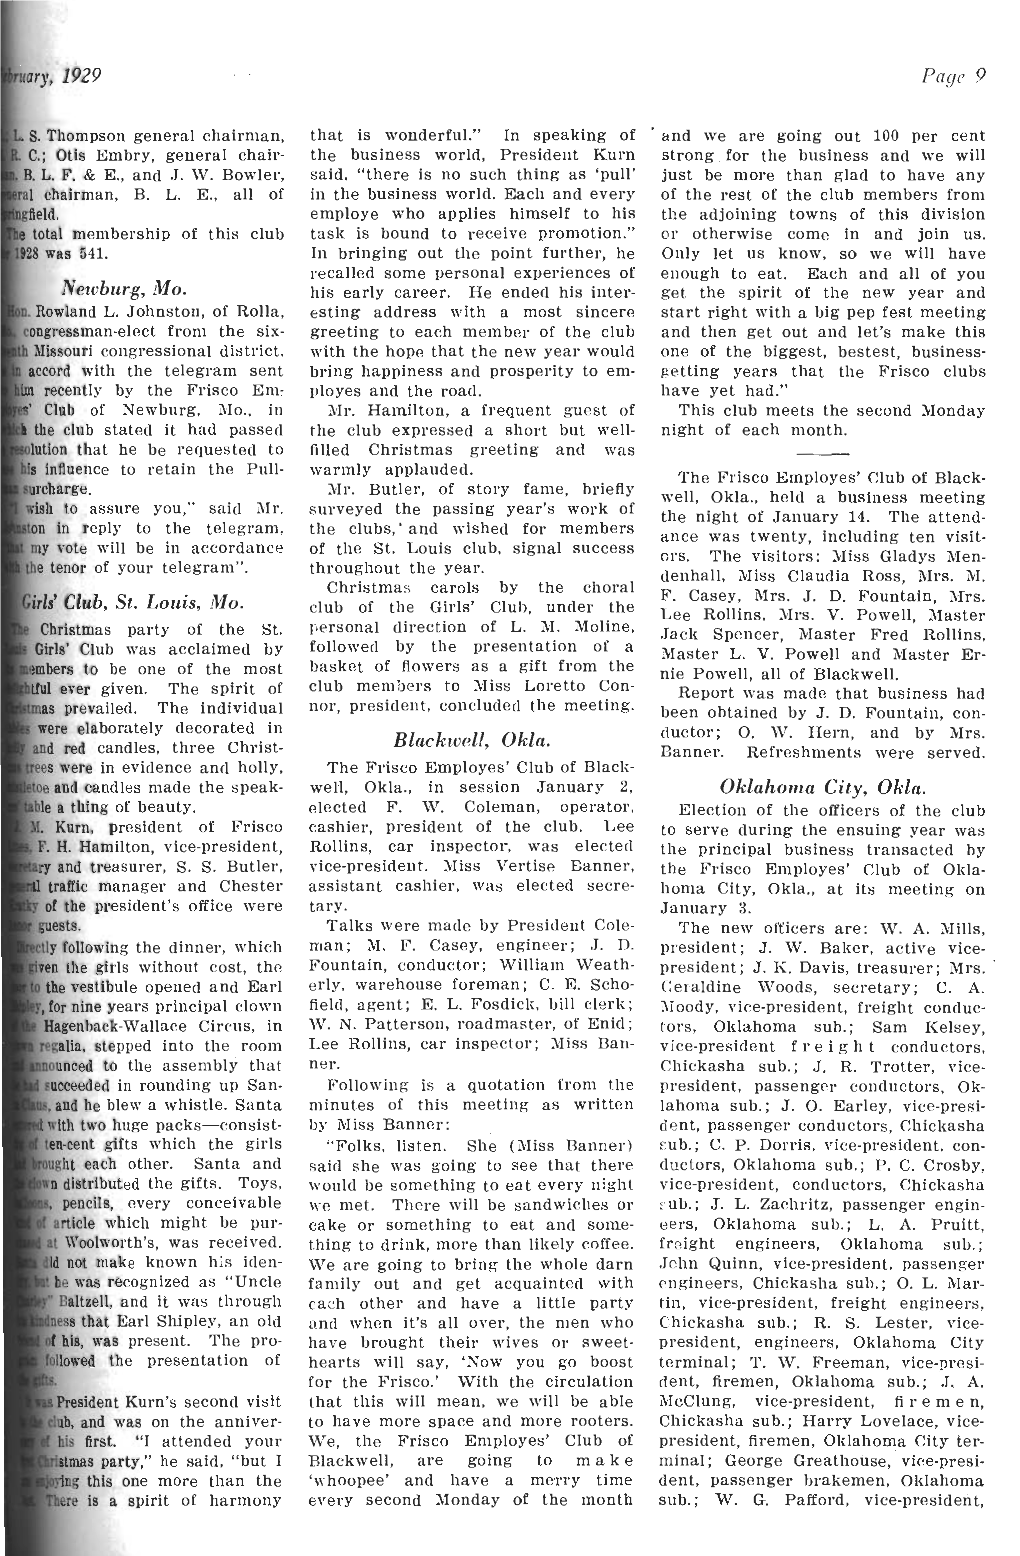 The Frisco Employes' Magazine, February 1929